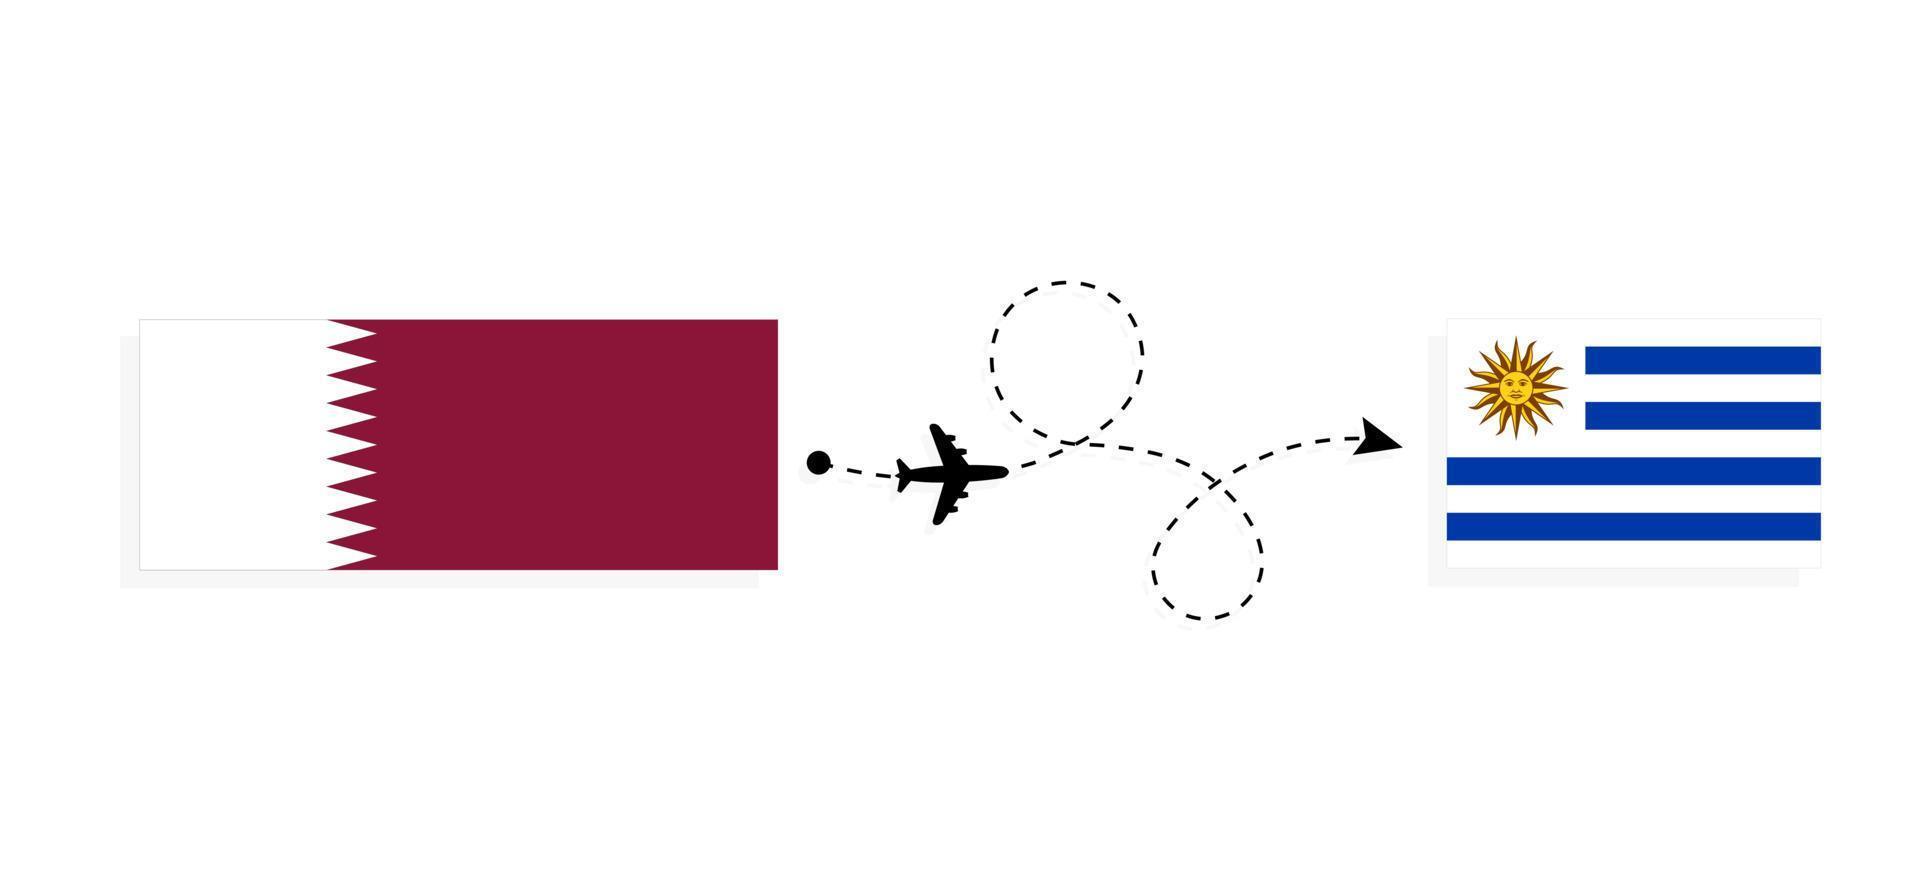 vlucht en reizen van qatar naar Uruguay door passagier vliegtuig reizen concept vector